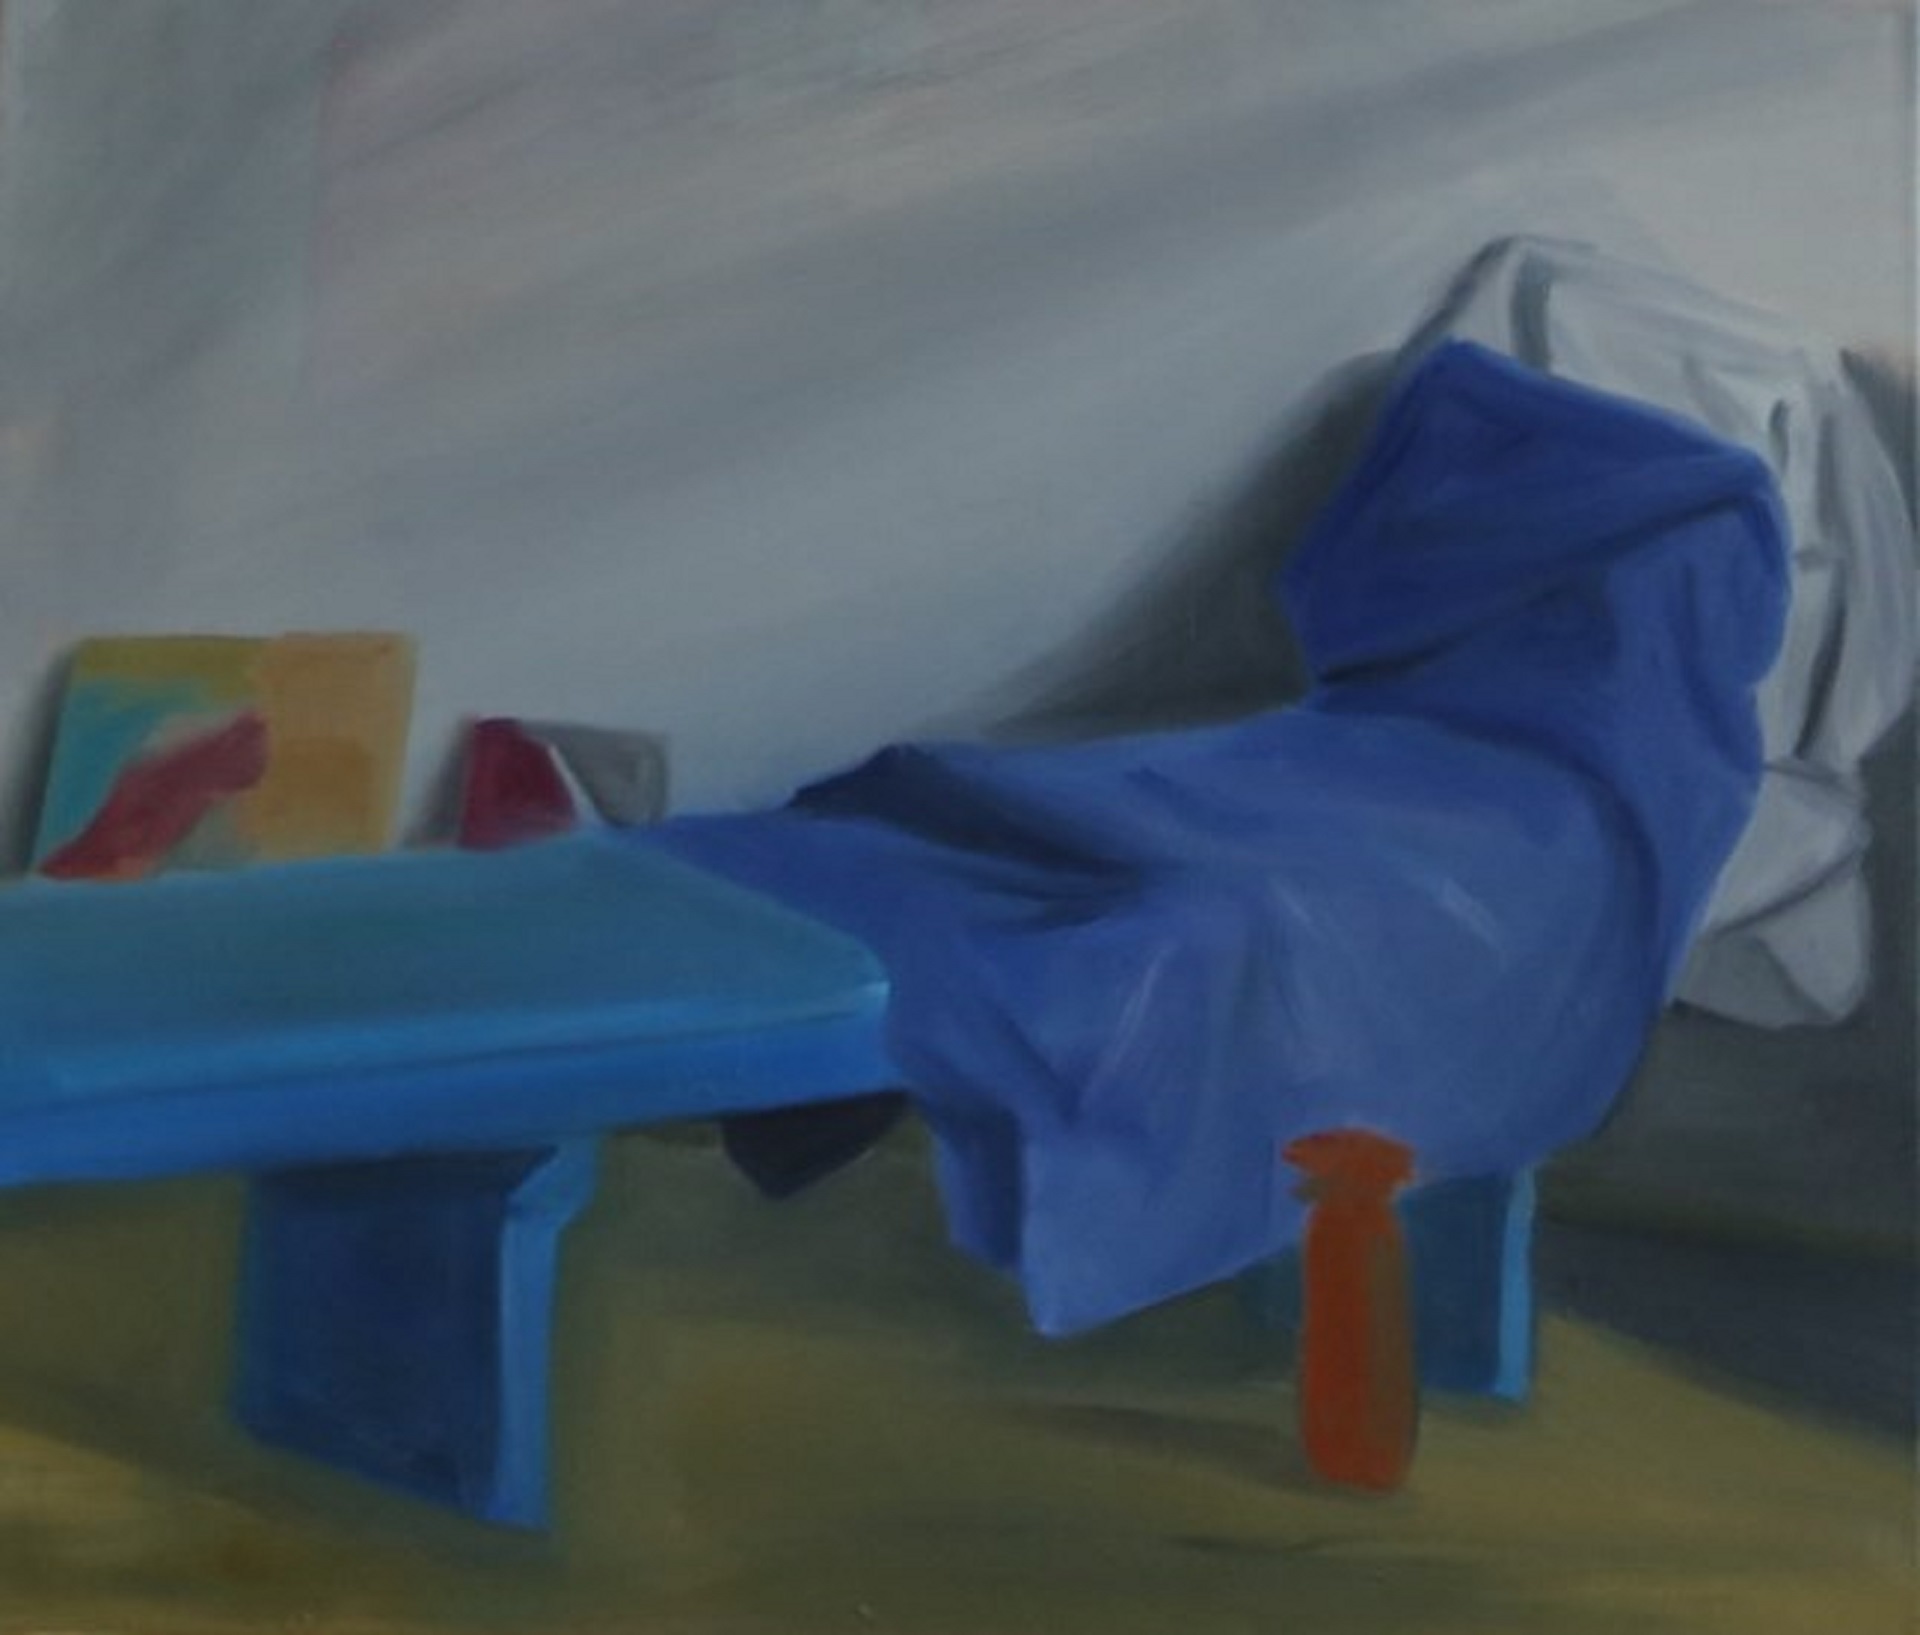 Obraz przedstawia niebieską ławkę, na której leży niebieski koc. Obok ławki stoi czerwona butelka.